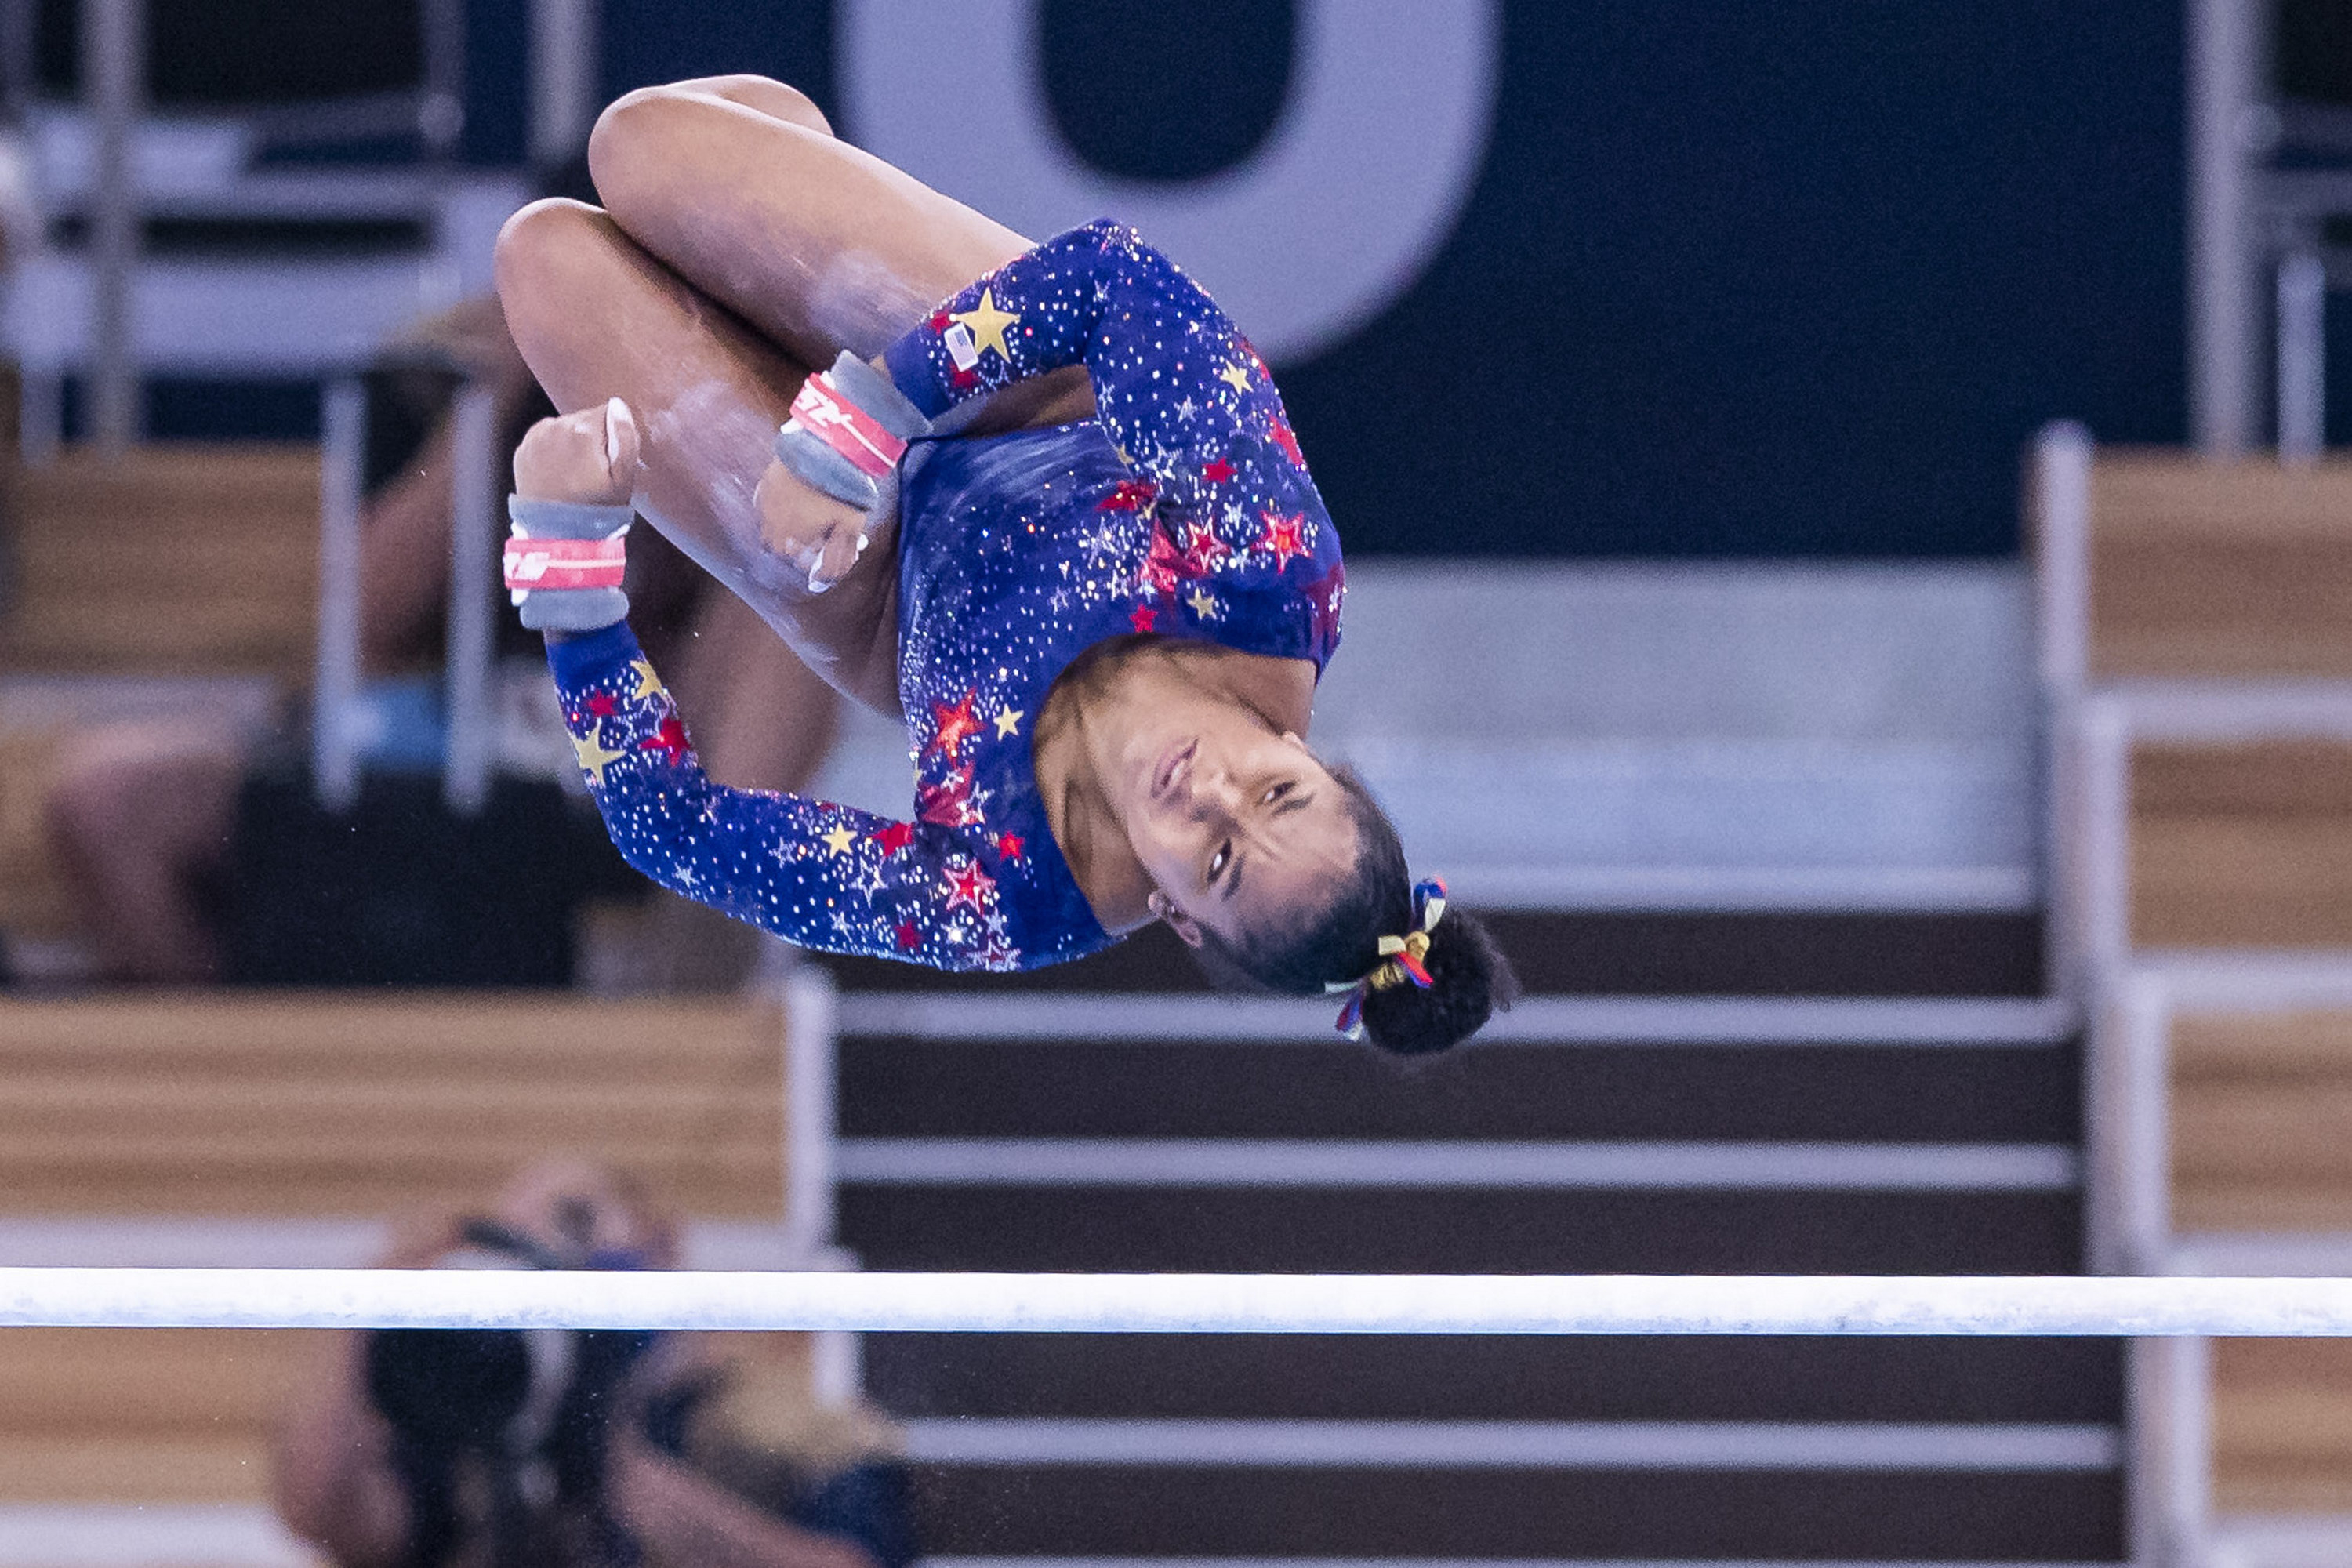 A gymnast twisting through the air